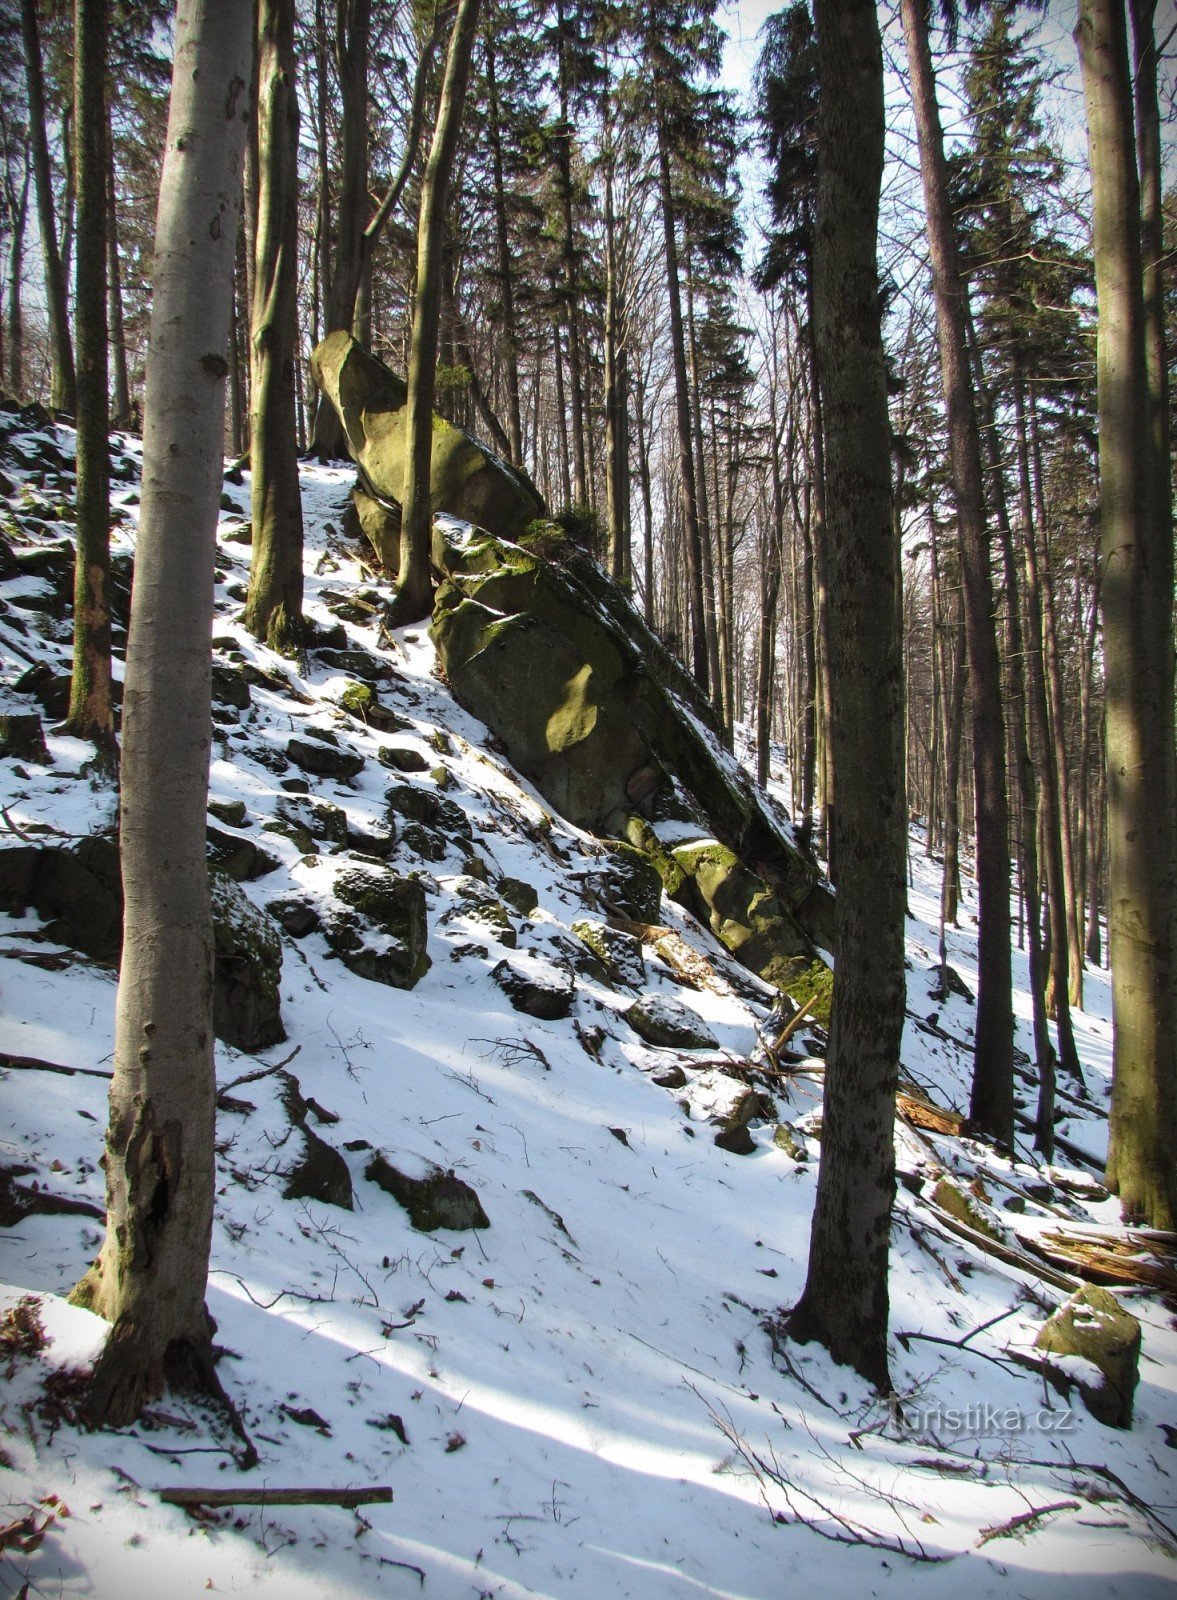 Držková - rocks of the Holíkov reserve